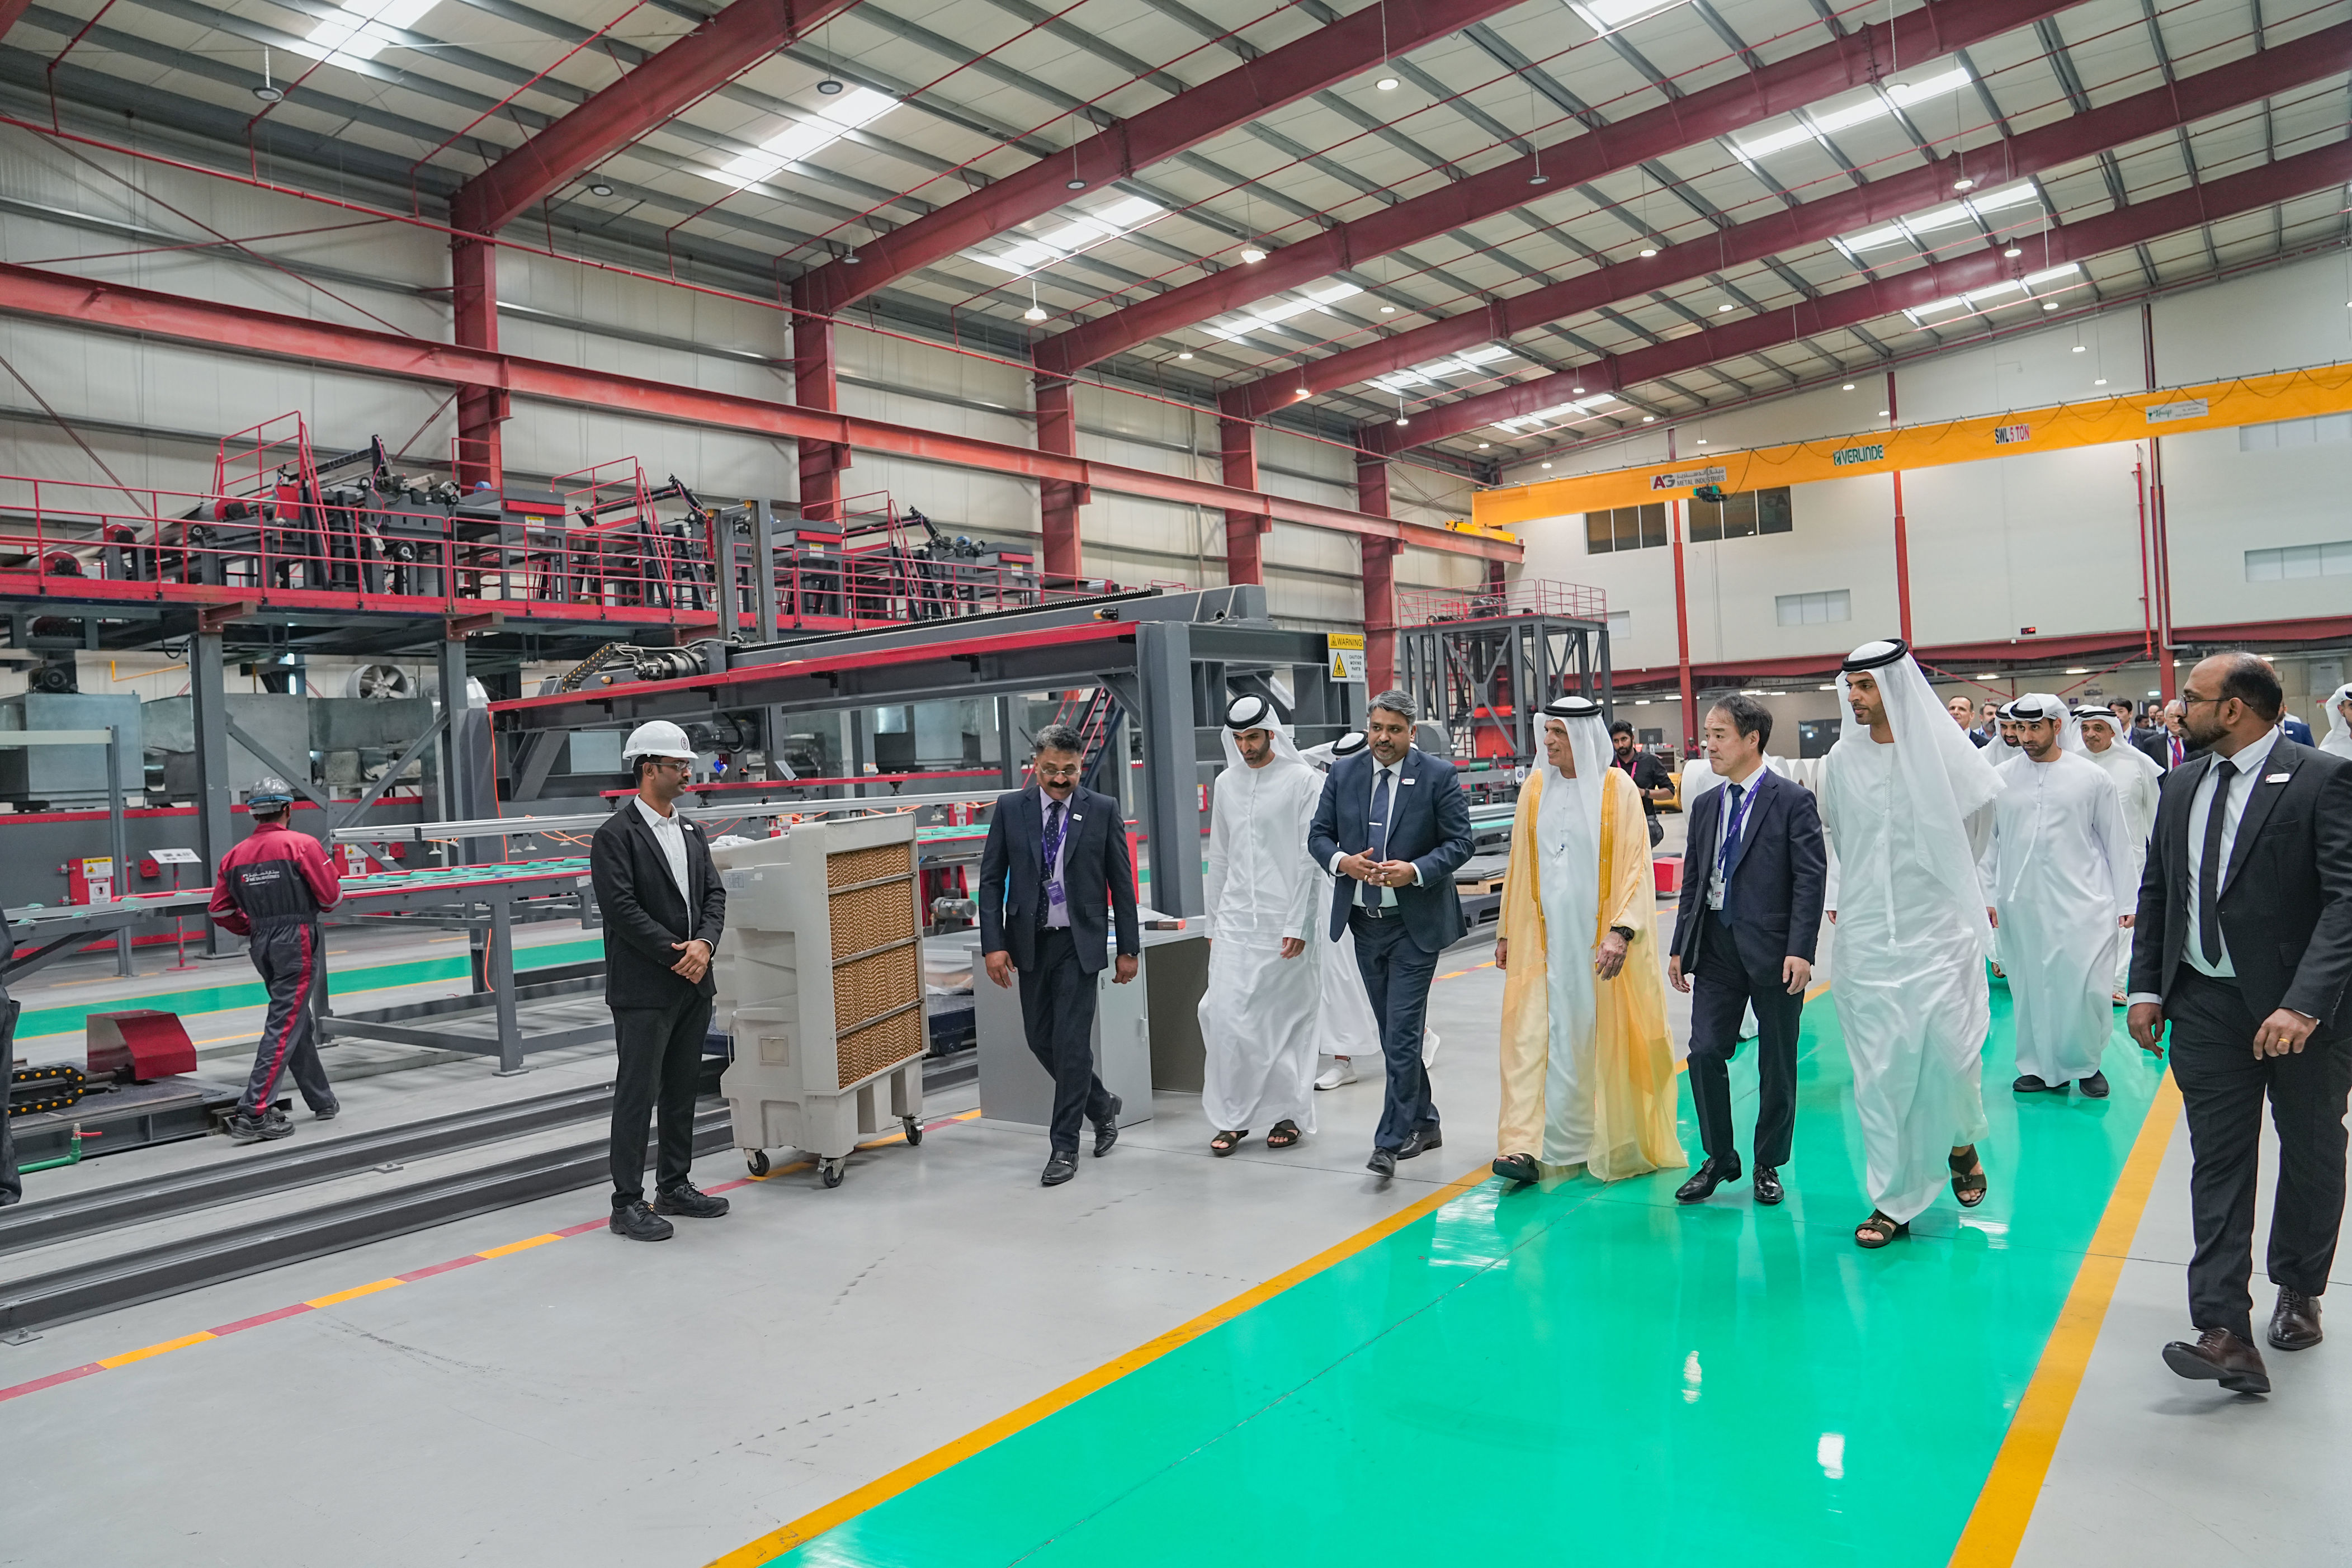 ras al khaimah ruler witnesses opening of al ghurair metal industries factory in al hamra industrial zone